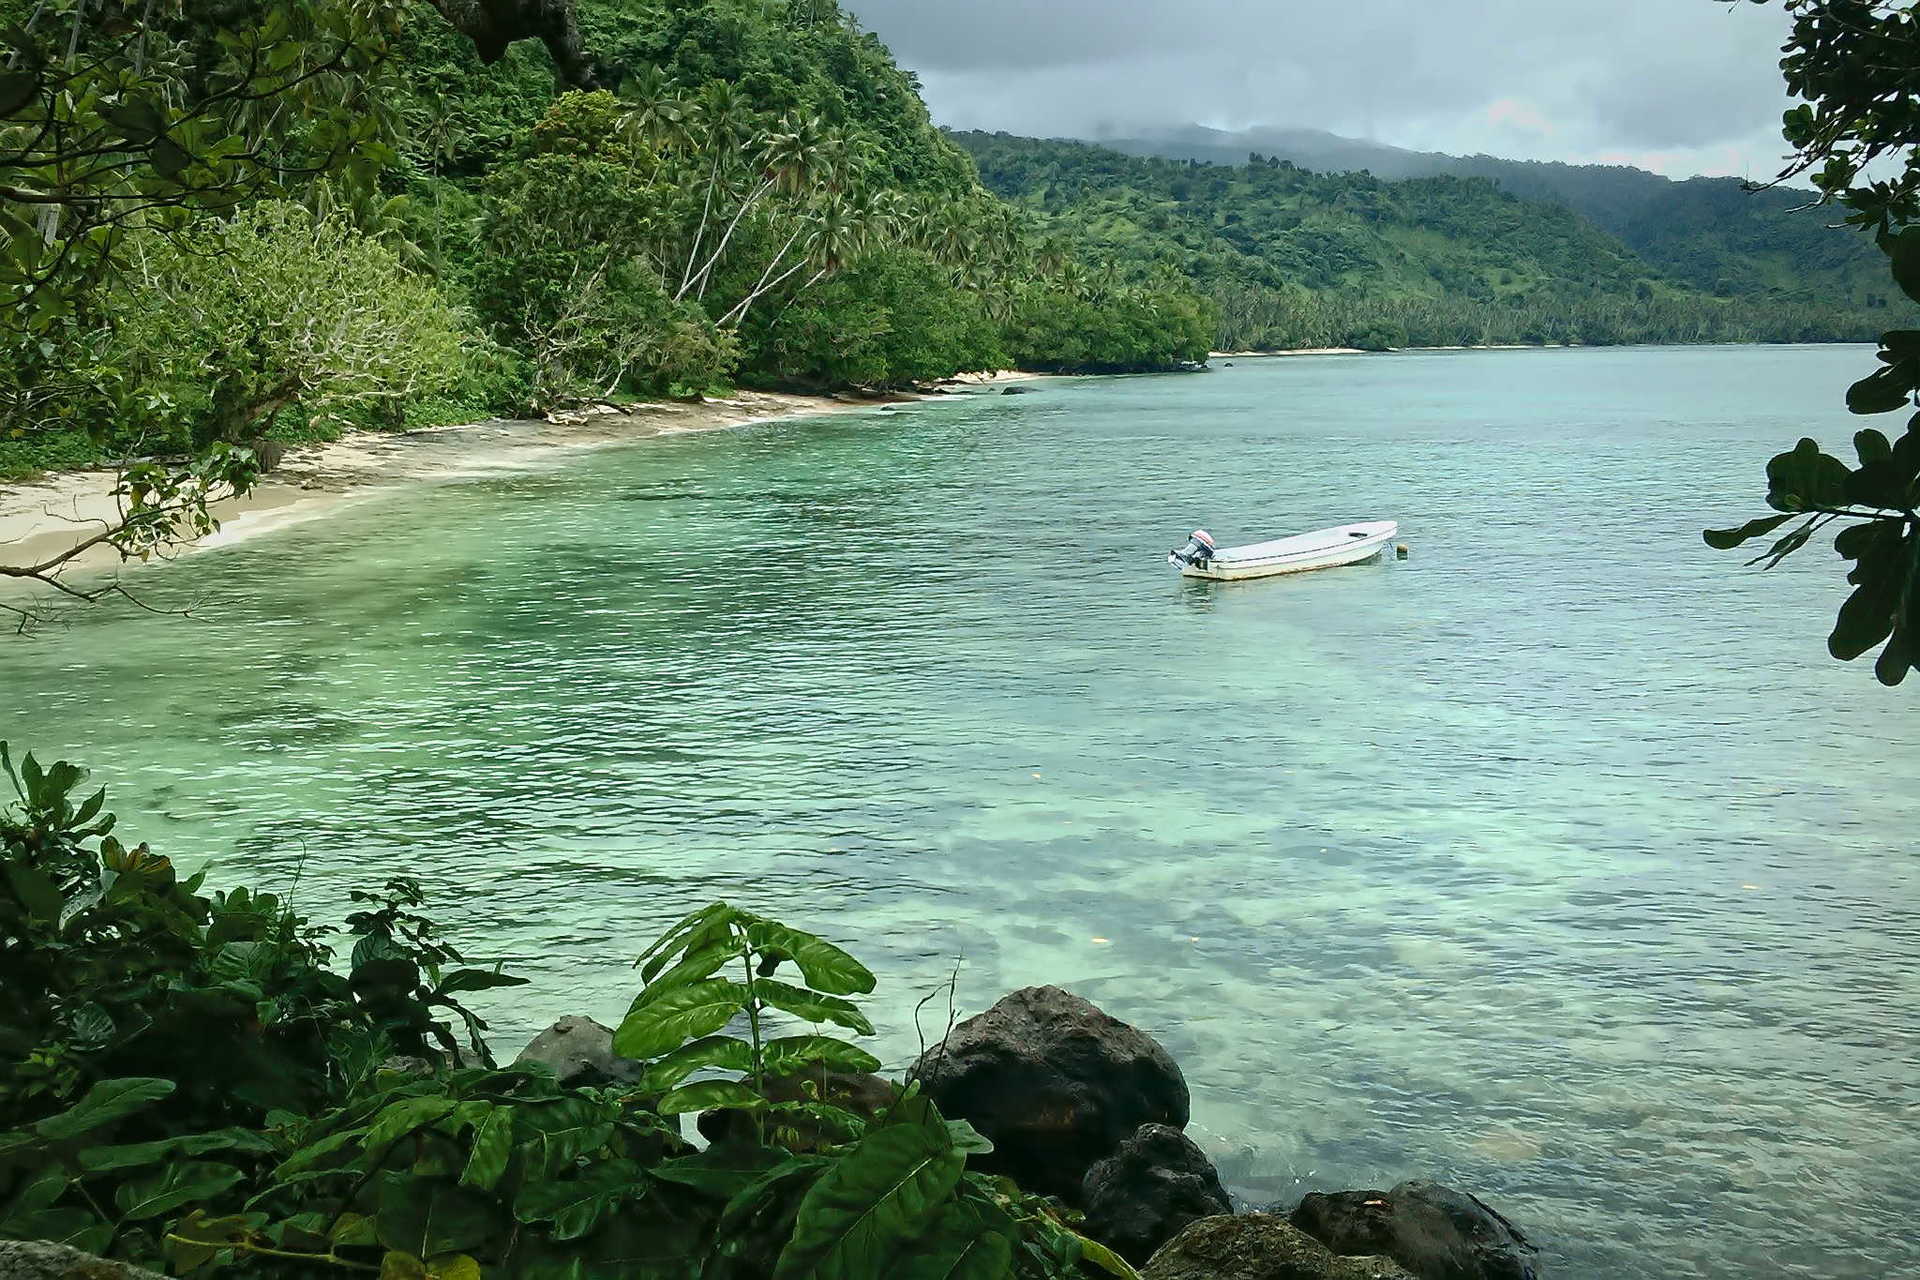 The island of Taveuni